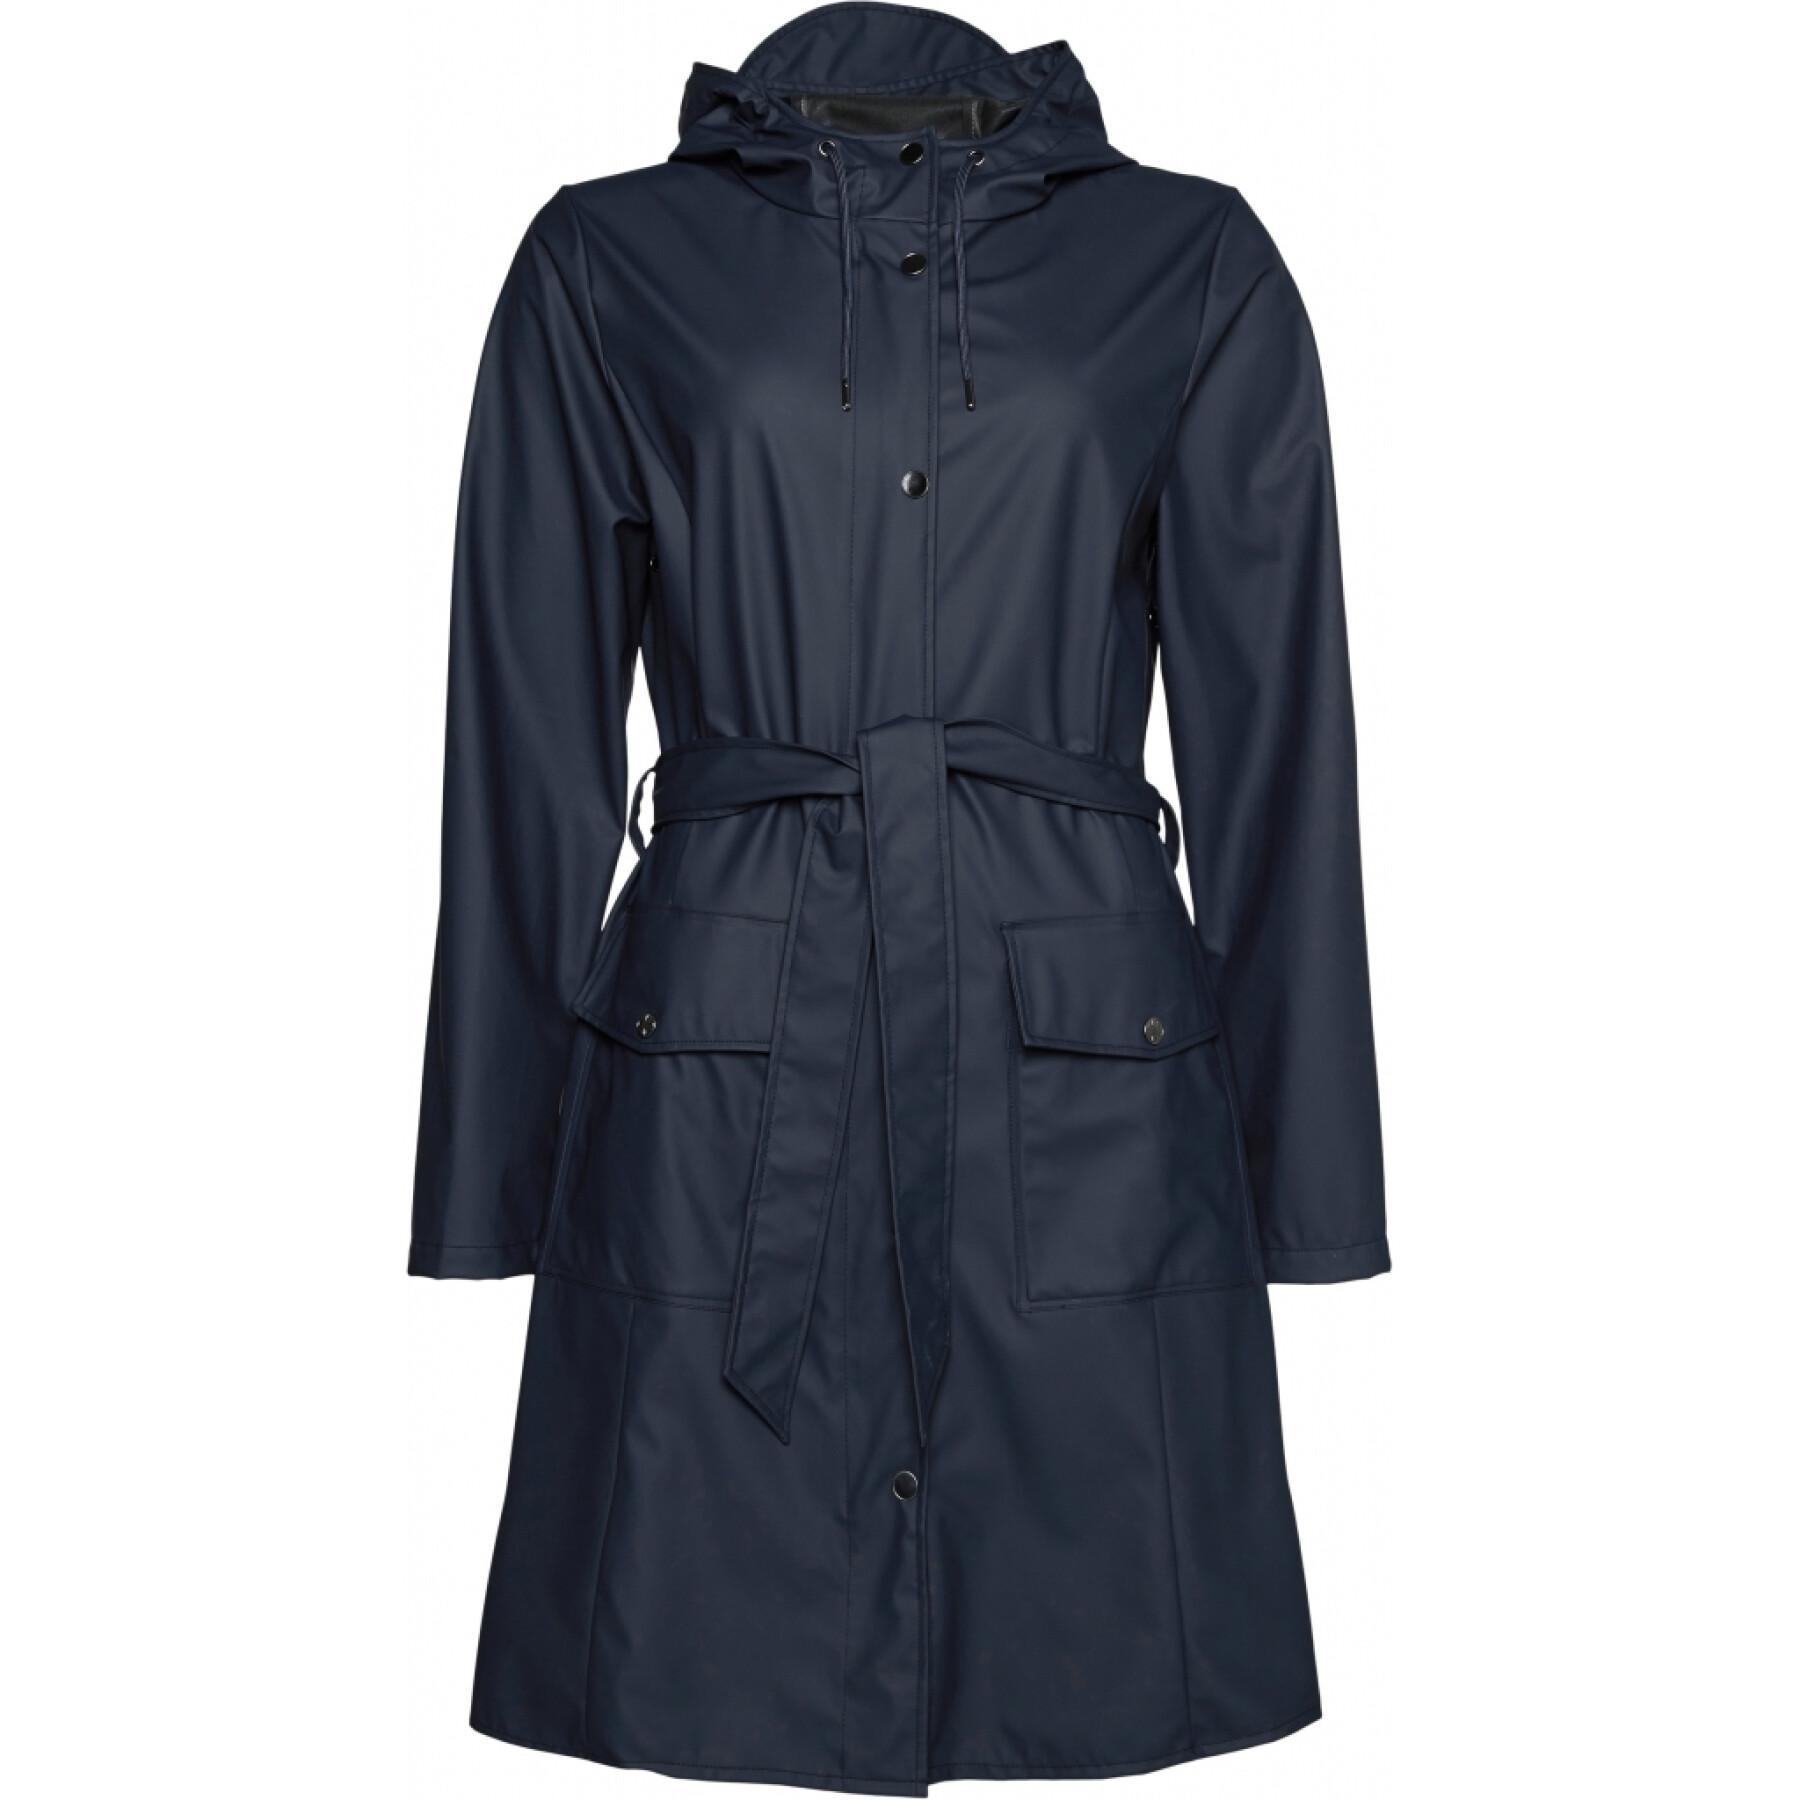 Women's waterproof jacket Rains Curve